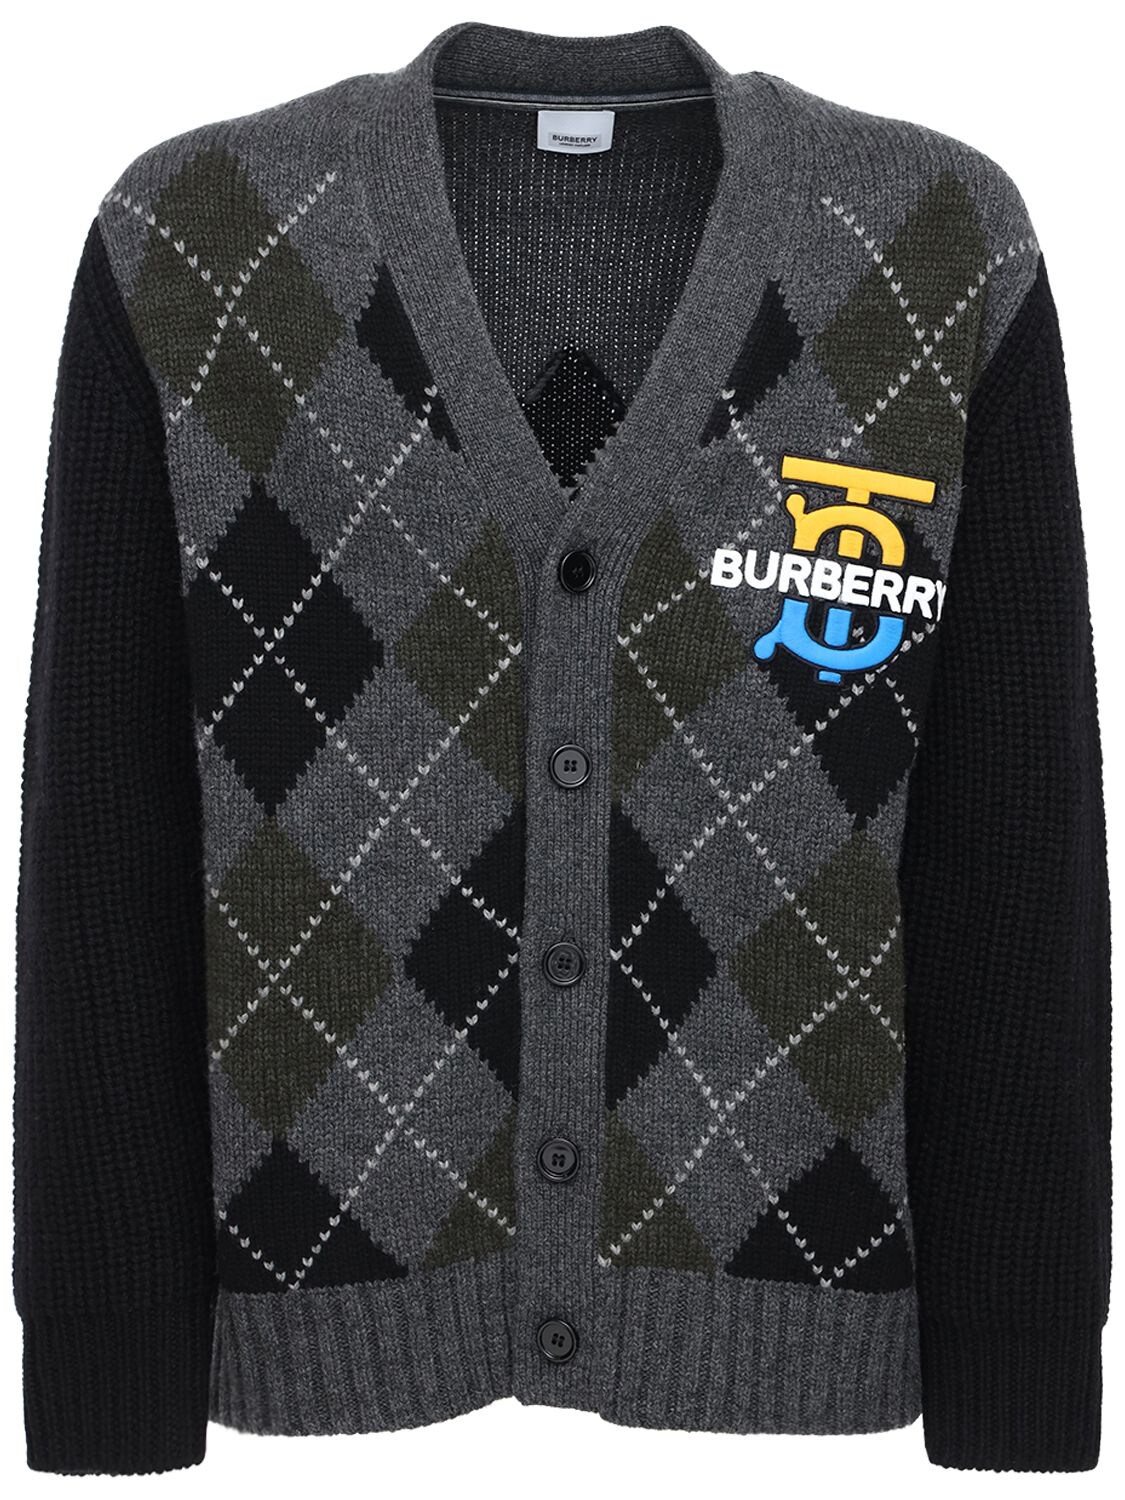 BURBERRY “SANTE”羊绒&羊毛针织开衫,72ILFC010-QTEYNJG1